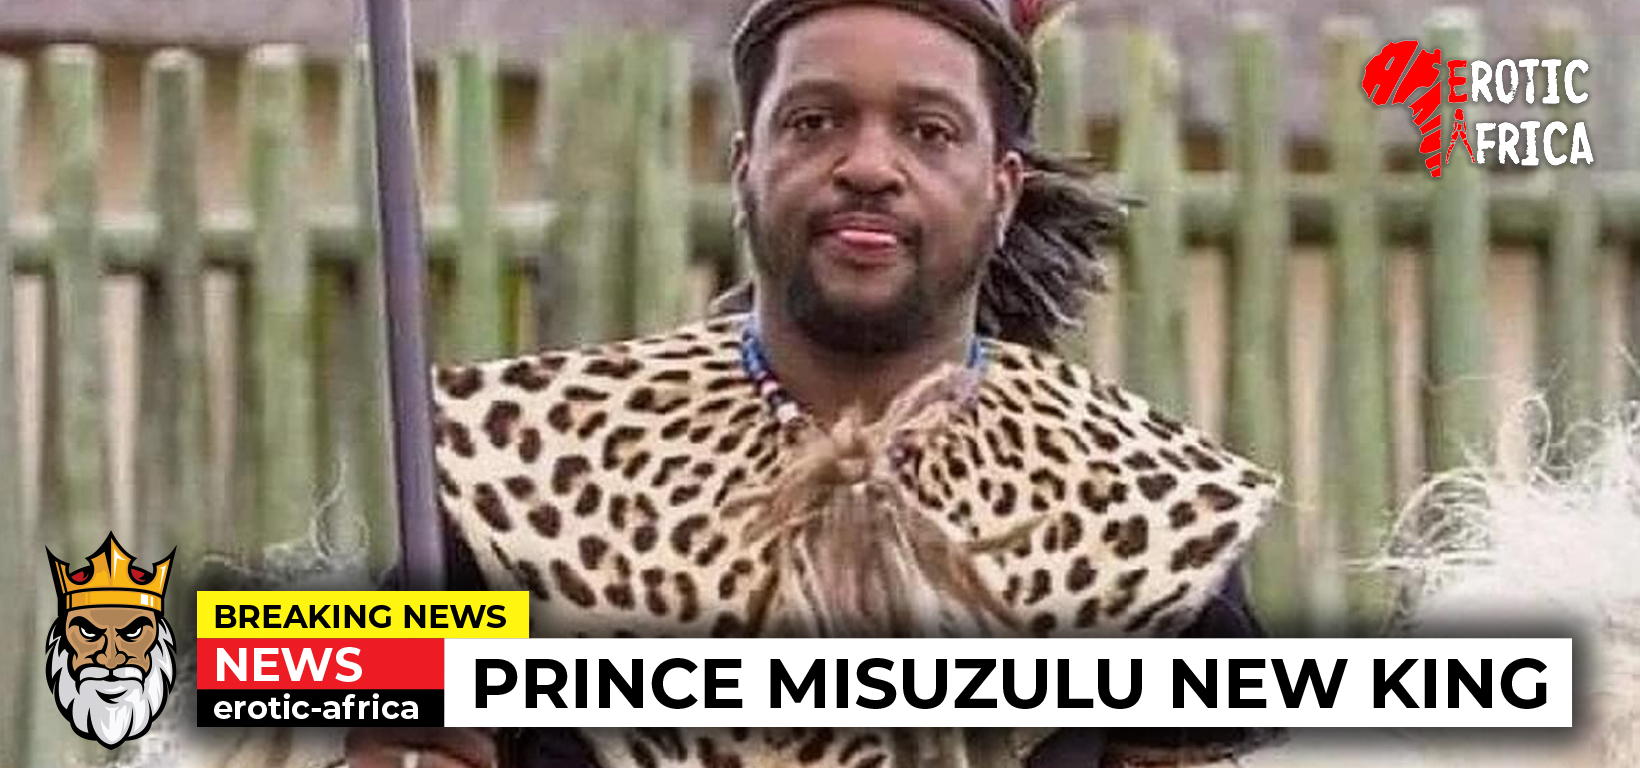 Meet Africa's latest King - Prince Misuzulu.